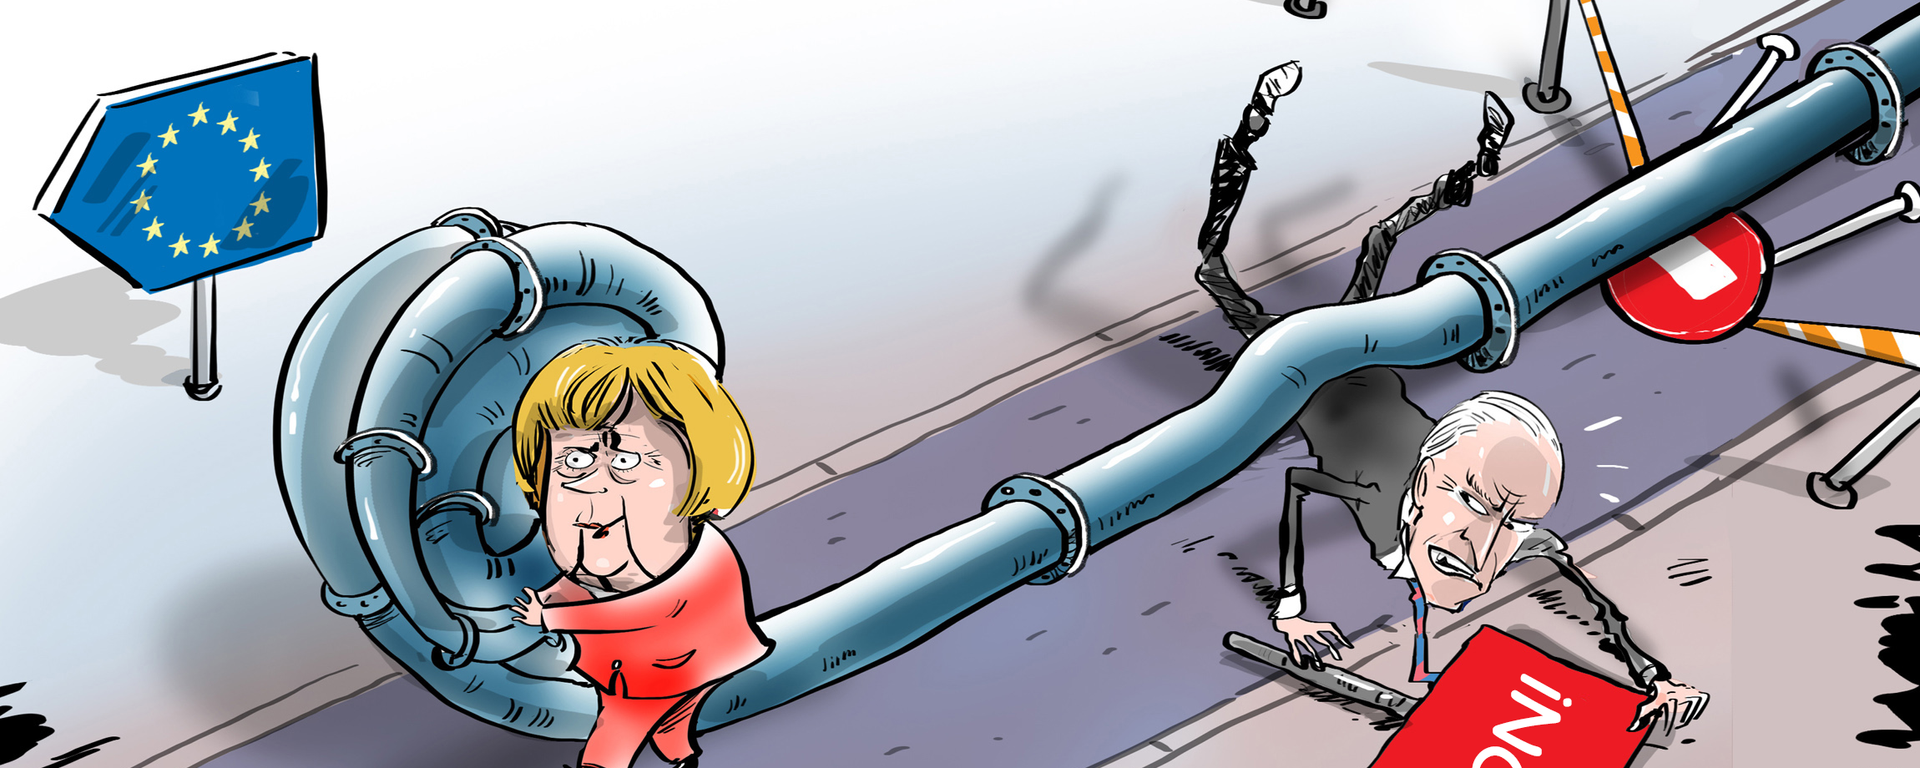 Merkel desaira a Biden - Sputnik Mundo, 1920, 13.07.2021